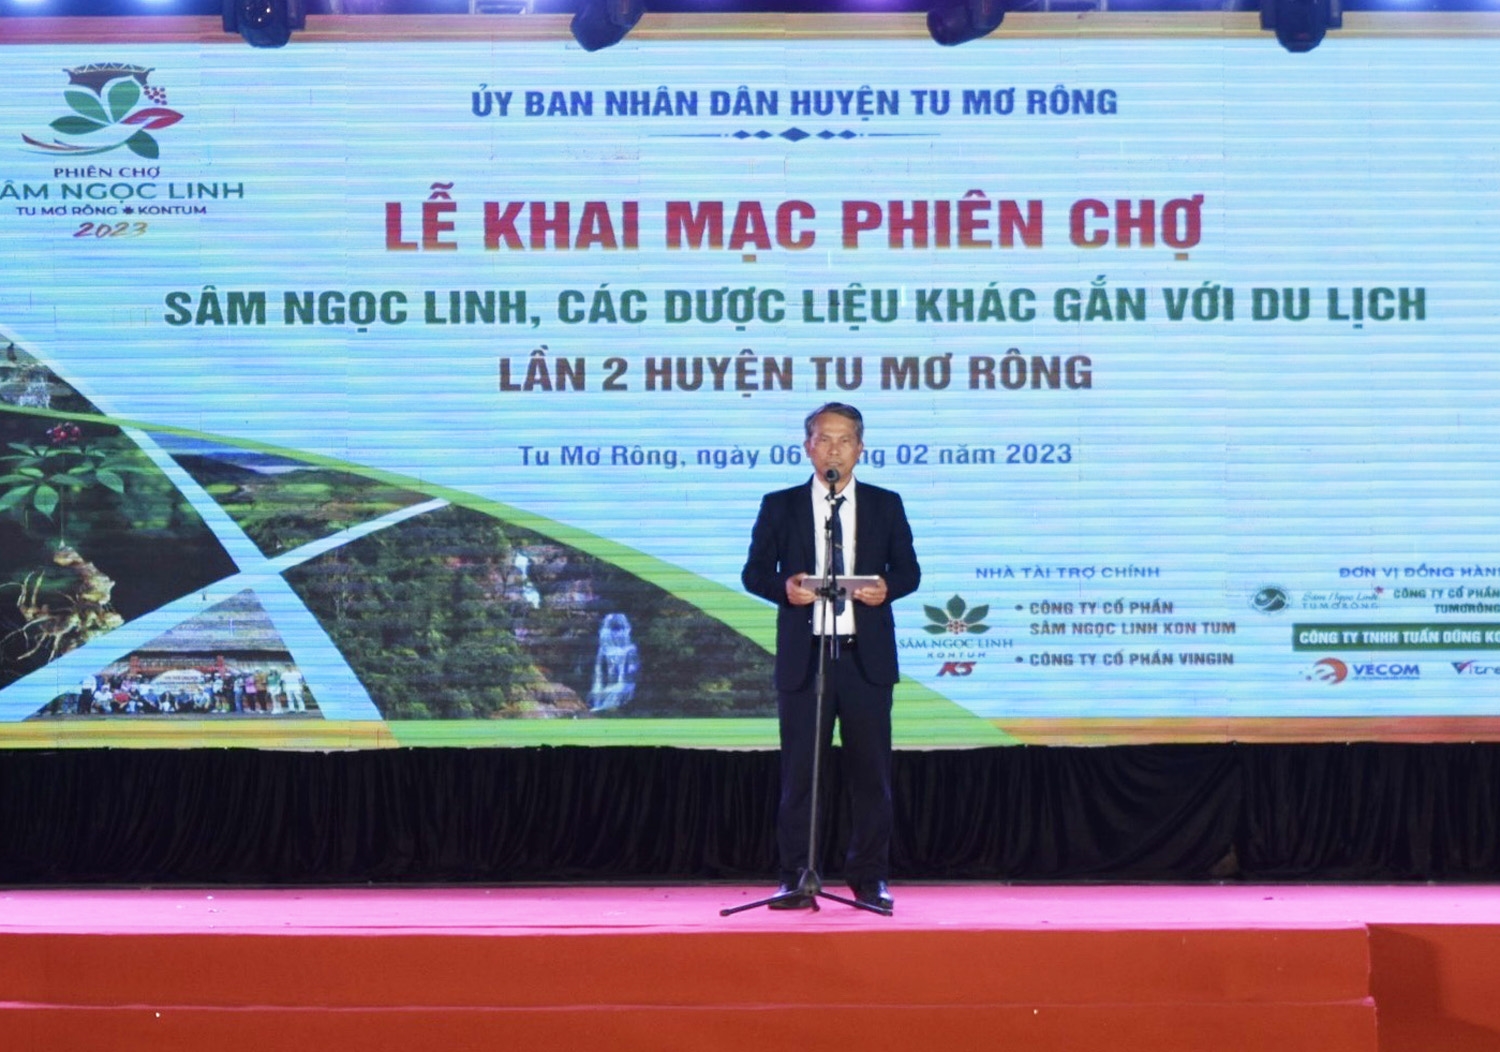 Ông Võ Trung Mạnh - Chủ tịch UBND huyện Tu Mơ Rông phát biểu khai mạc Phiên chợ